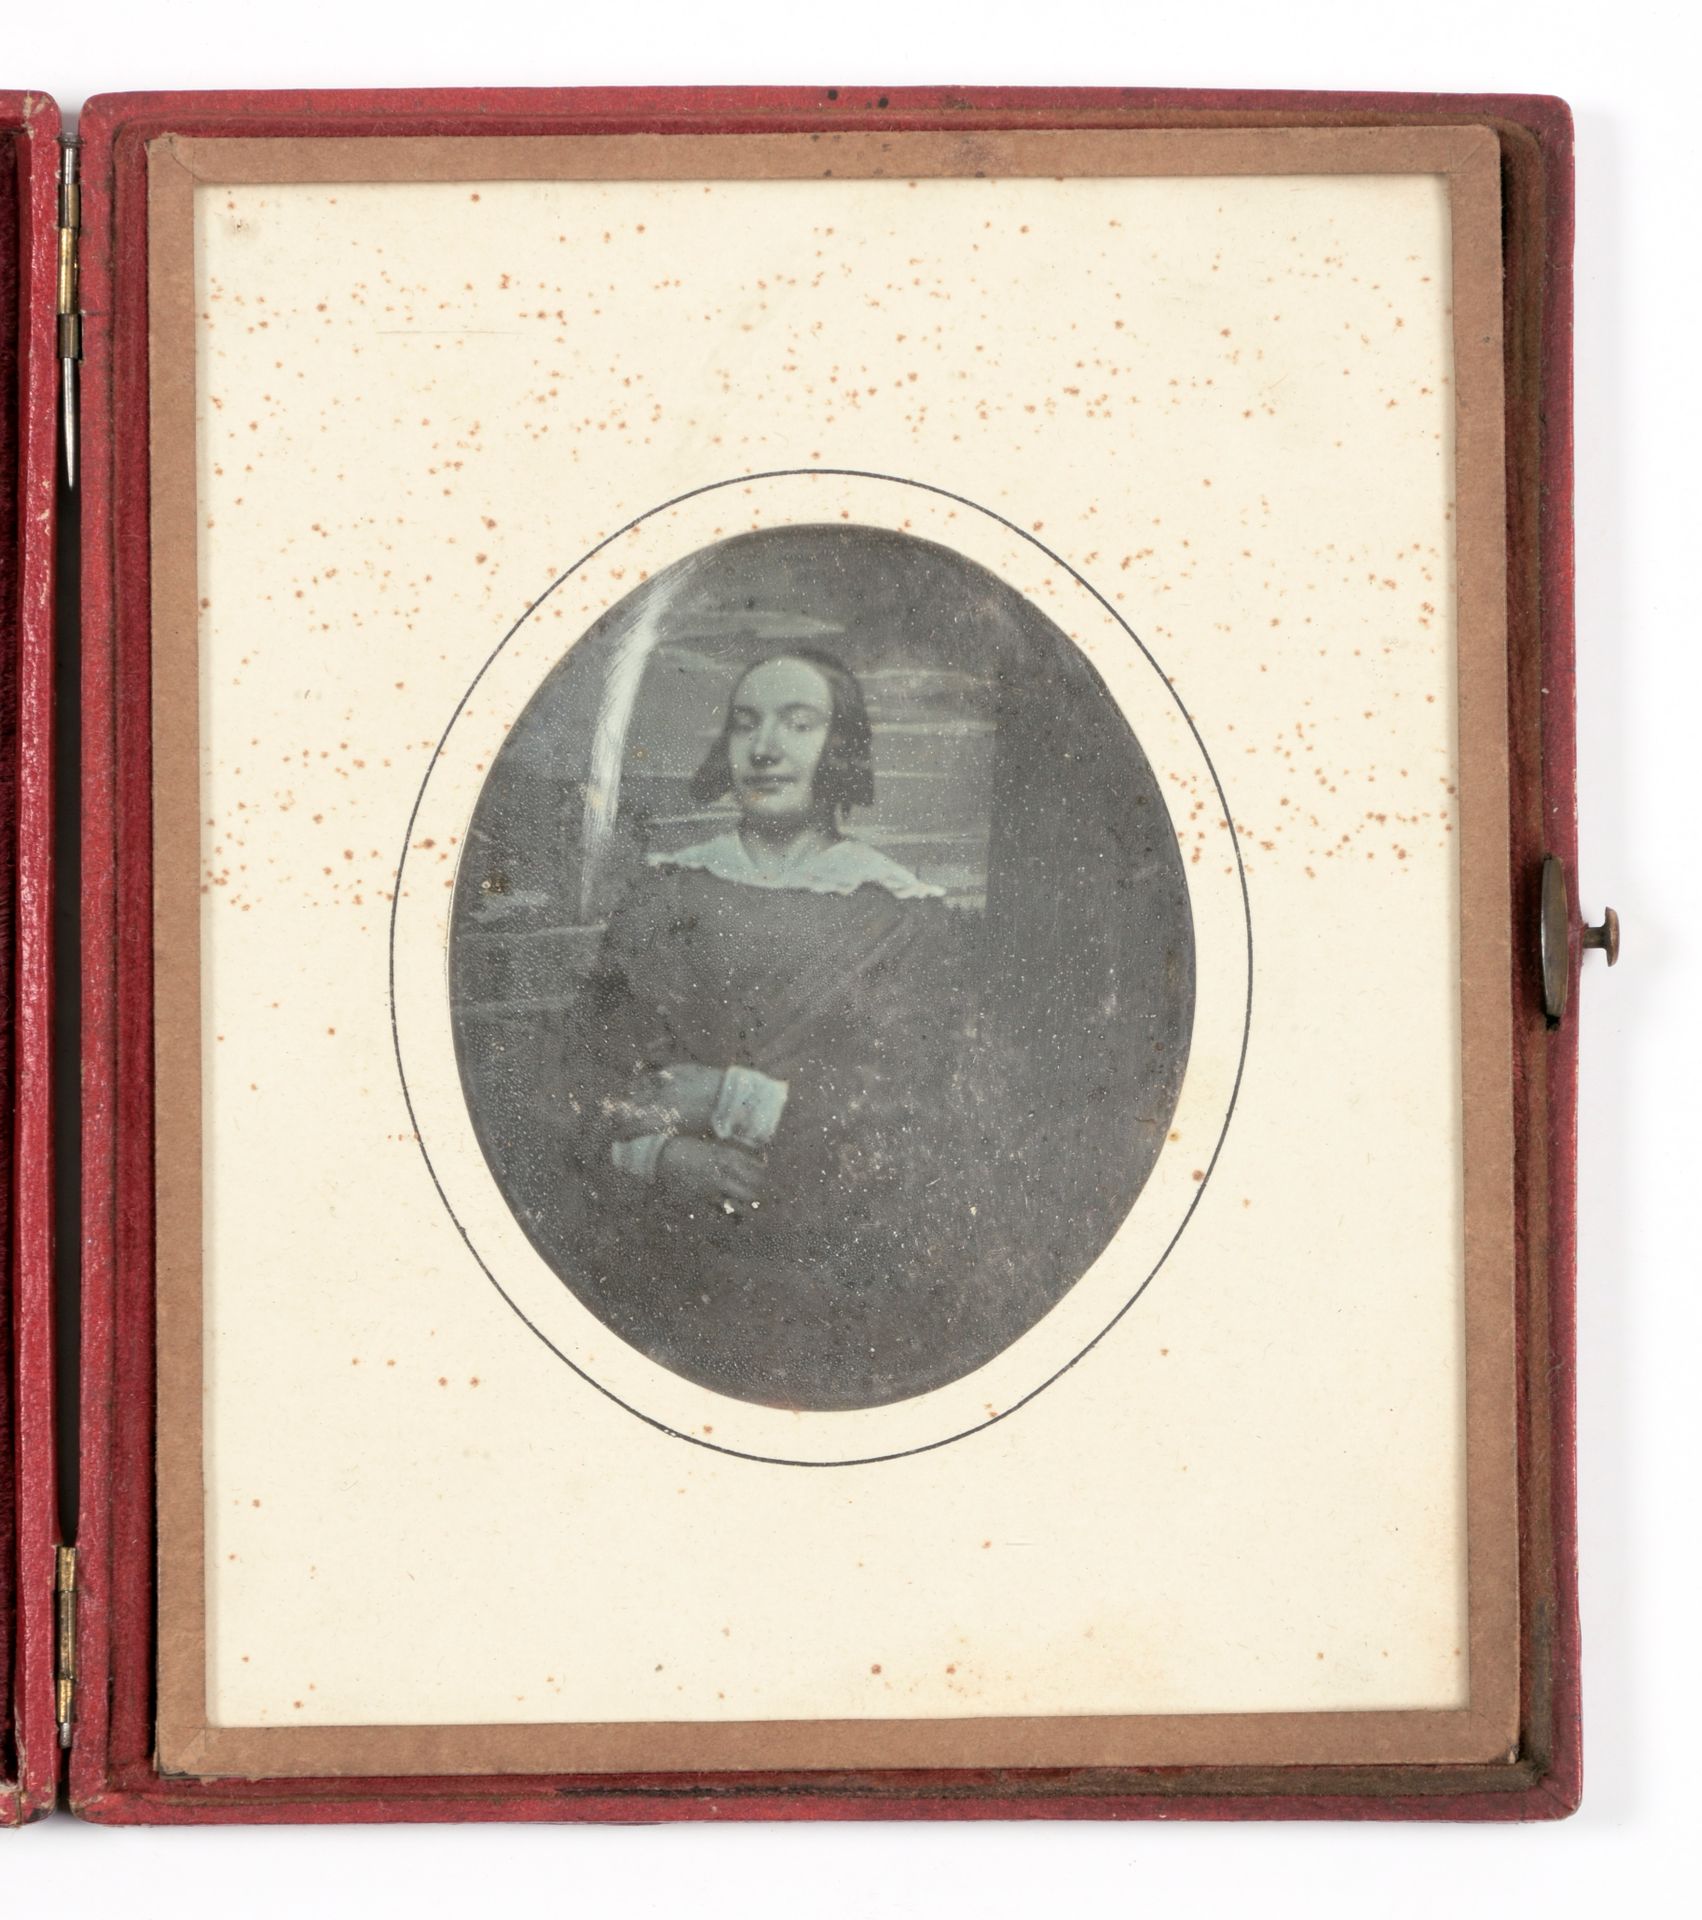 [FOTO'S] Daguerrotipia de una joven

Forma (13 x 11,5 cm) en tela marroquí con u&hellip;